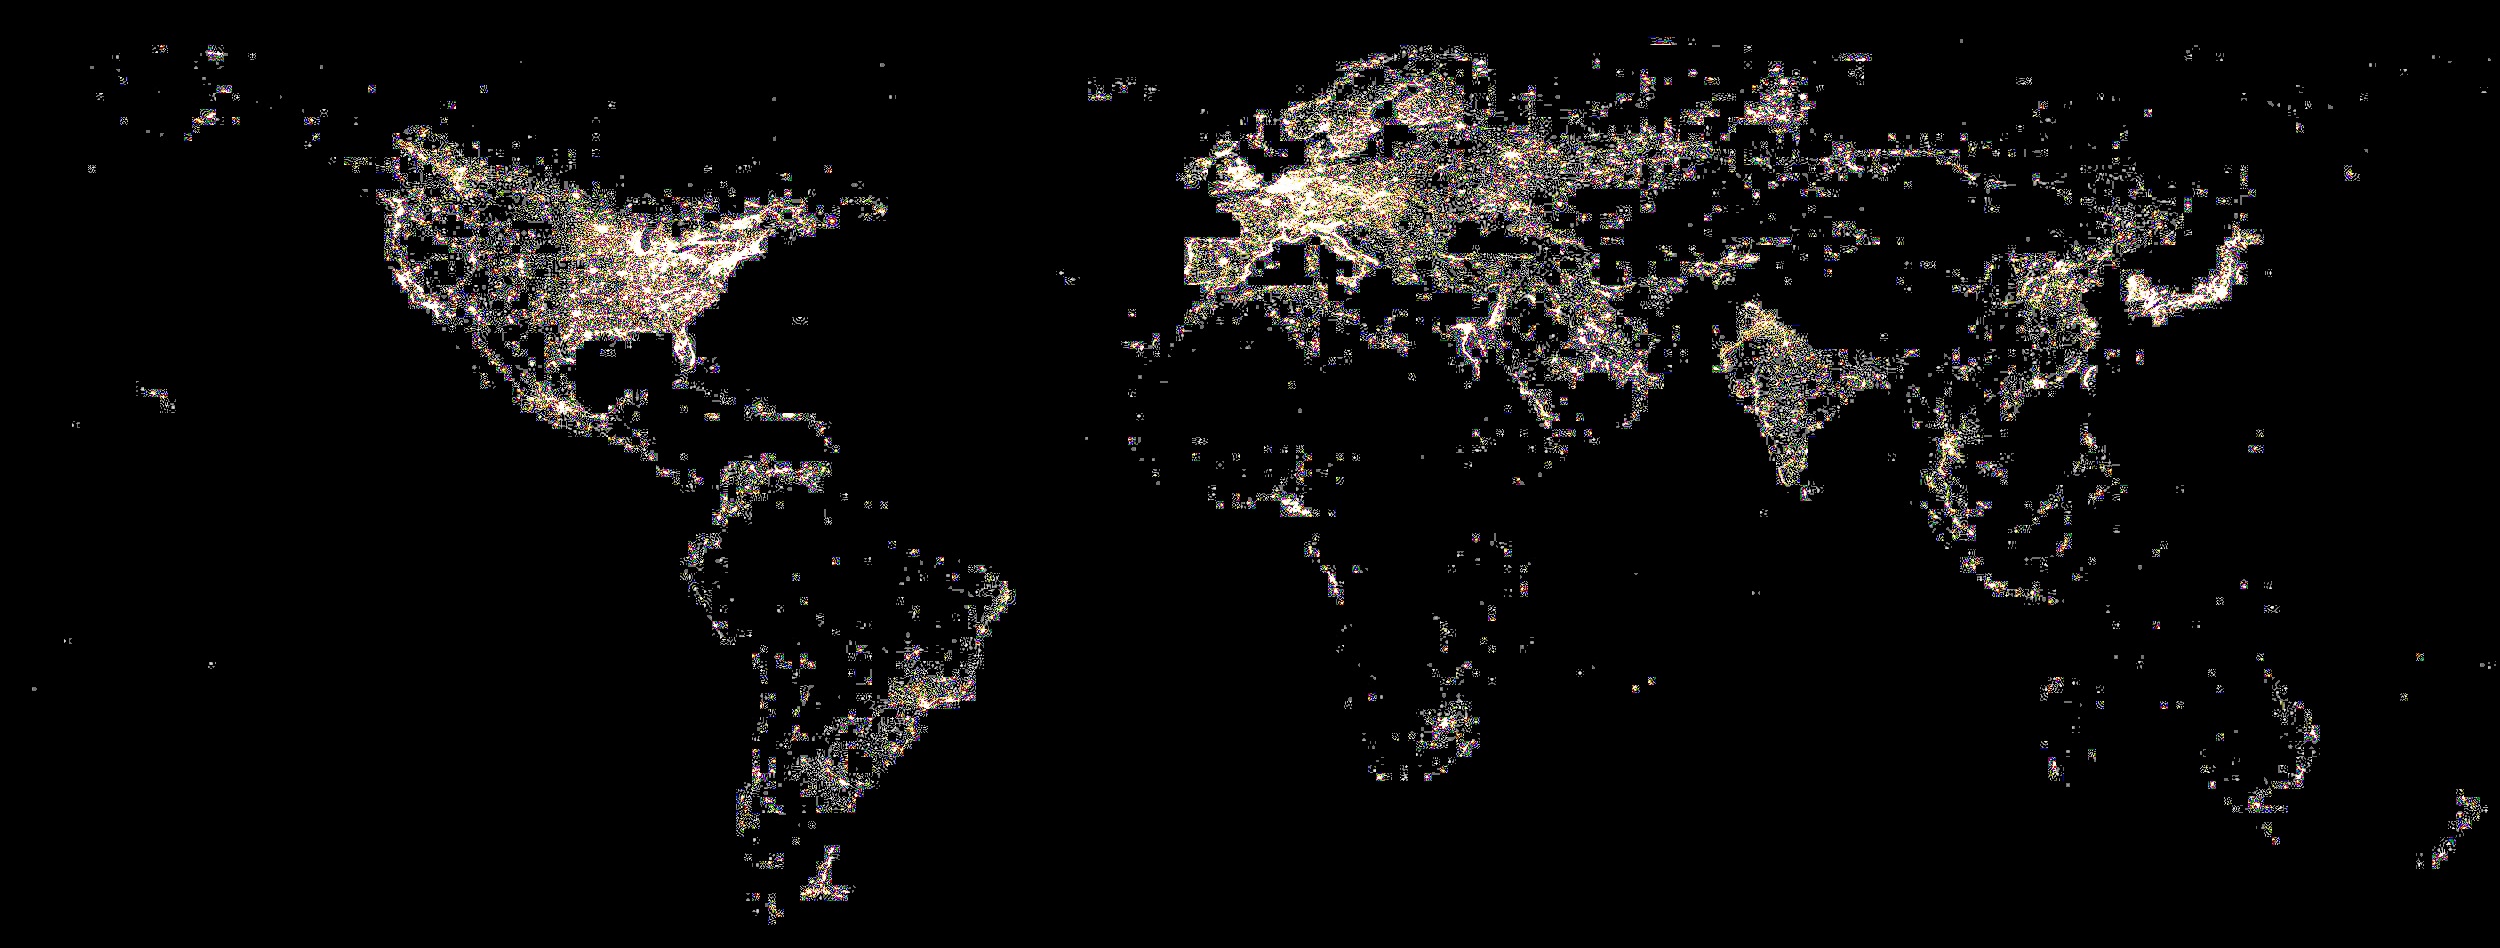 Освещенность различных частей Земли в ночное время. Источник изображения: wikipedia.org